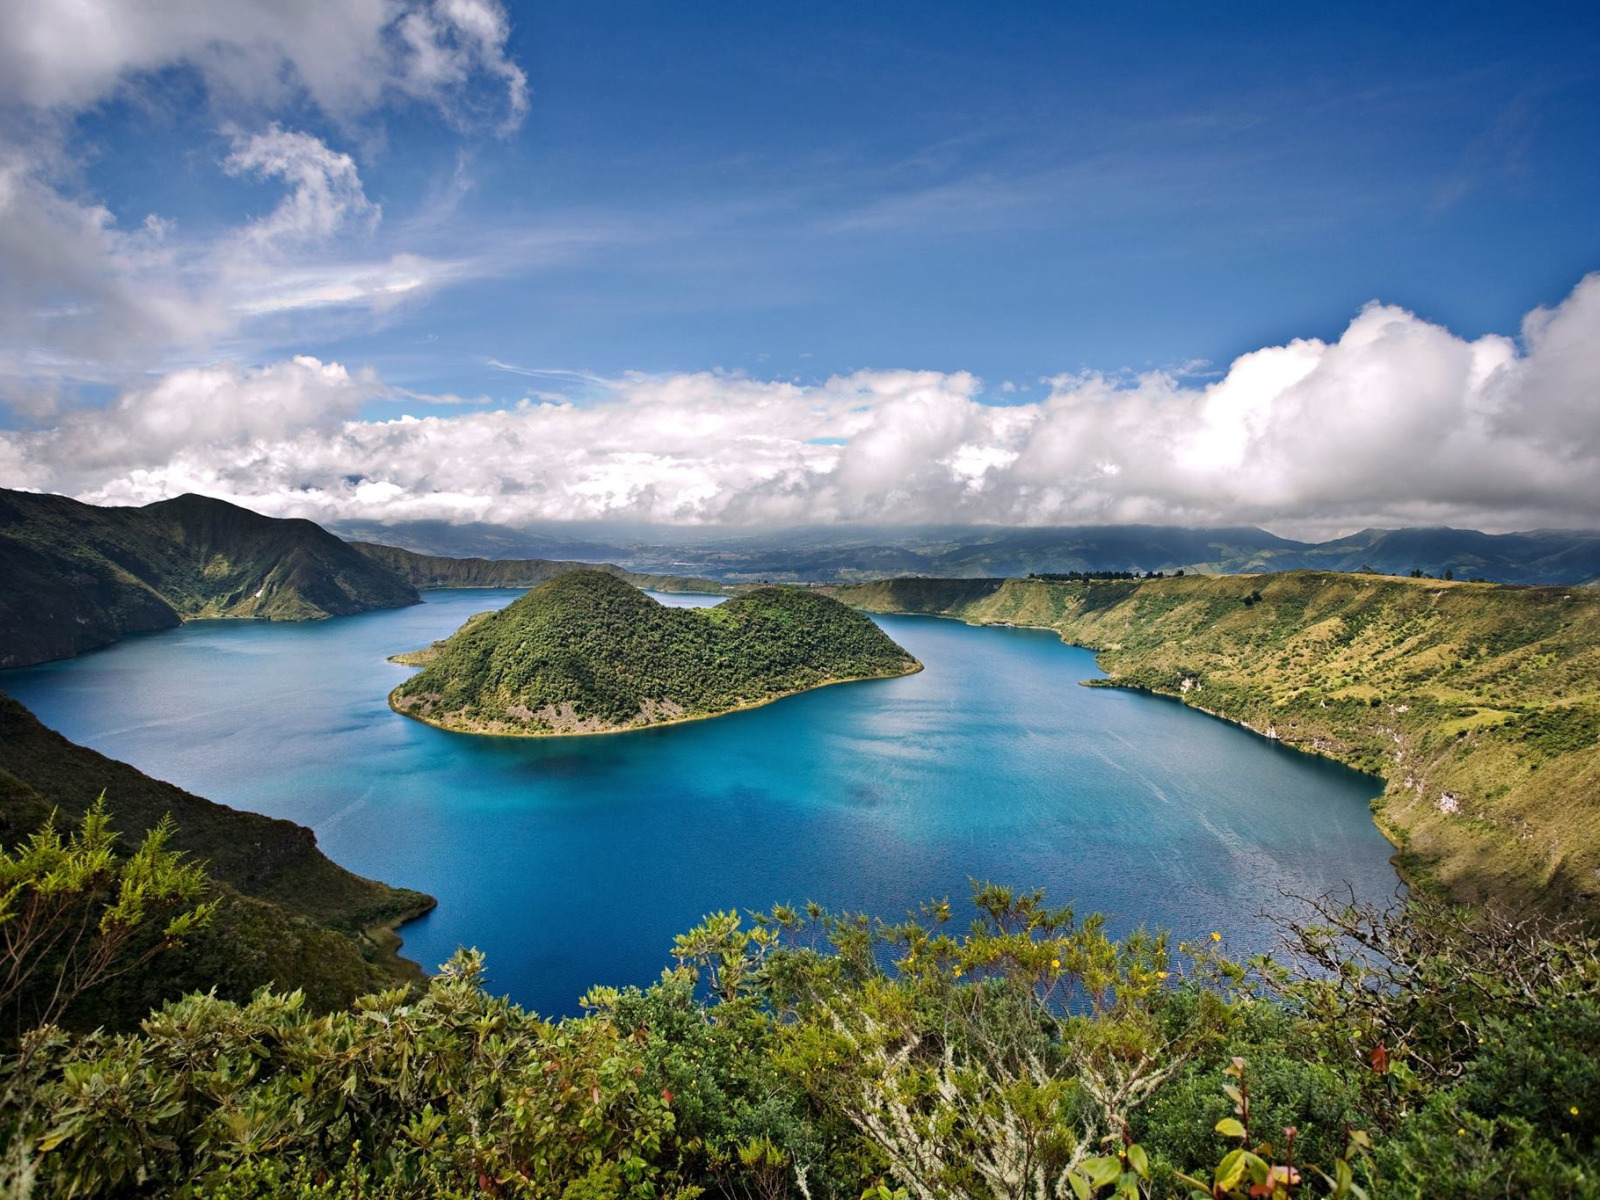 Пресноводное озеро в латинской америке самое большое. Эквадор Галапагосские острова. Южная Америка Галапагосские острова. Национальный парк «Галапагосские острова». Галапагосские острова, Эквадор климат.